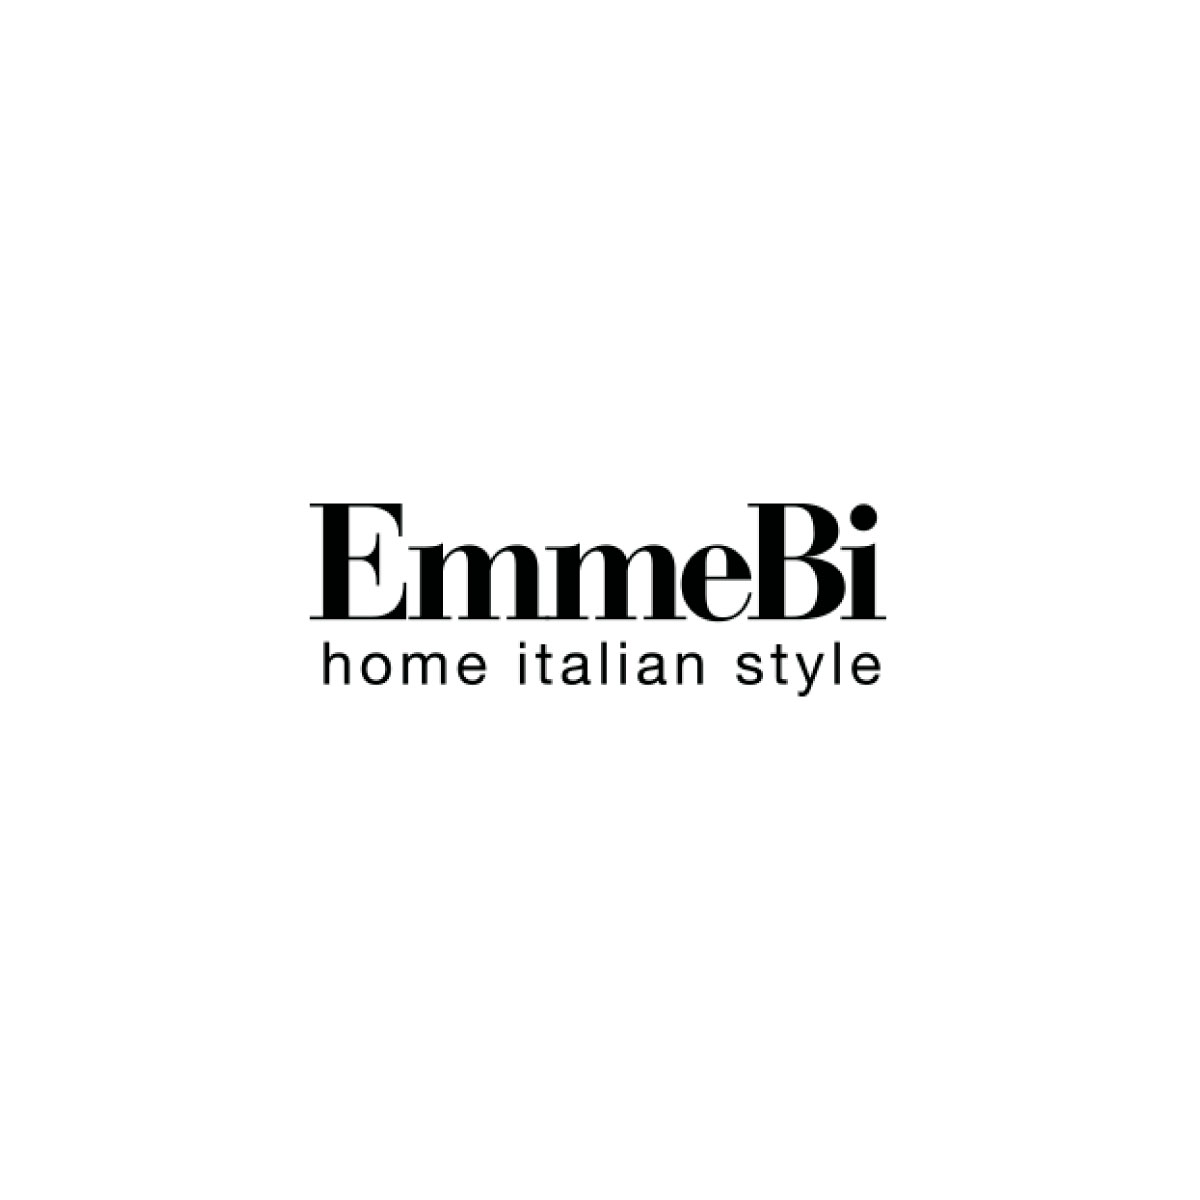 EmmeBi